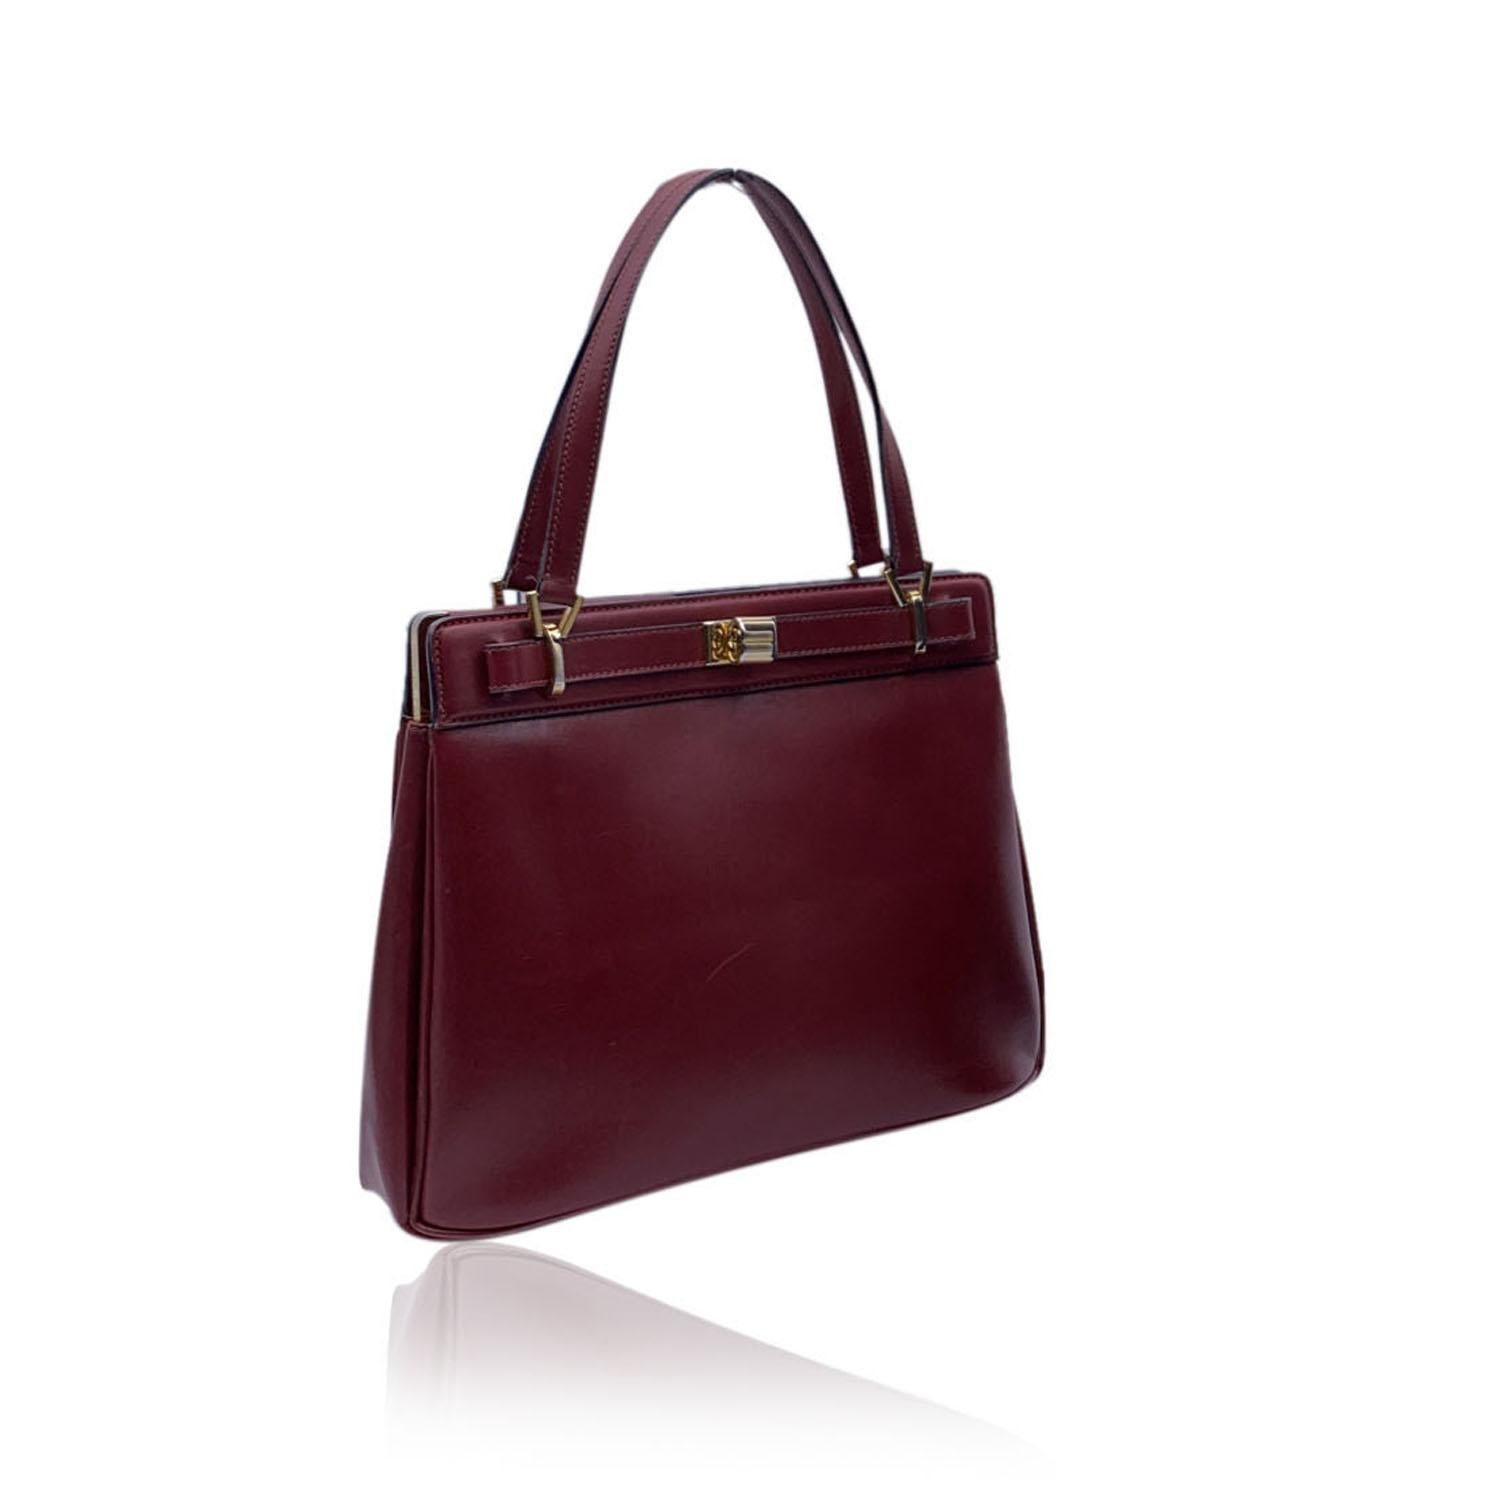 Black Gucci Vintage Burgundy Leather Handbag Satchel Top Handles Bag